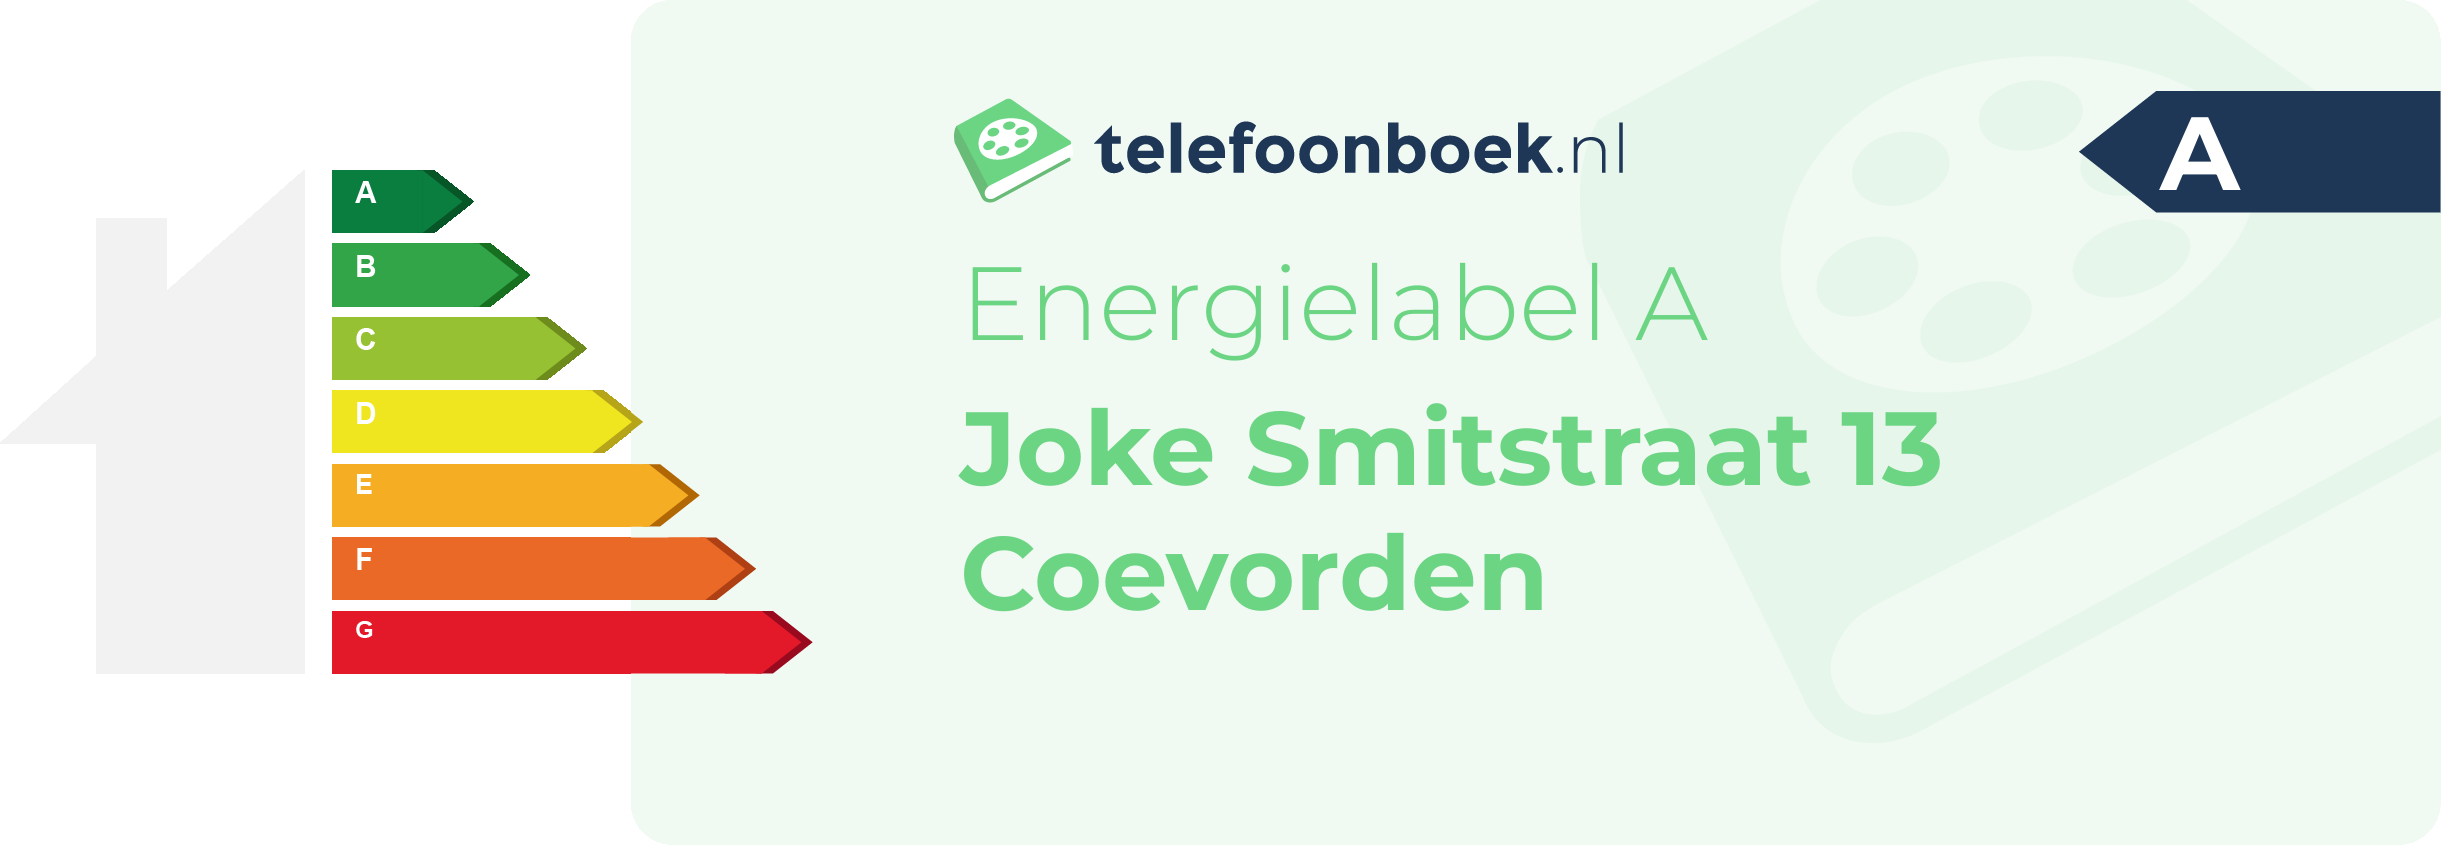 Energielabel Joke Smitstraat 13 Coevorden